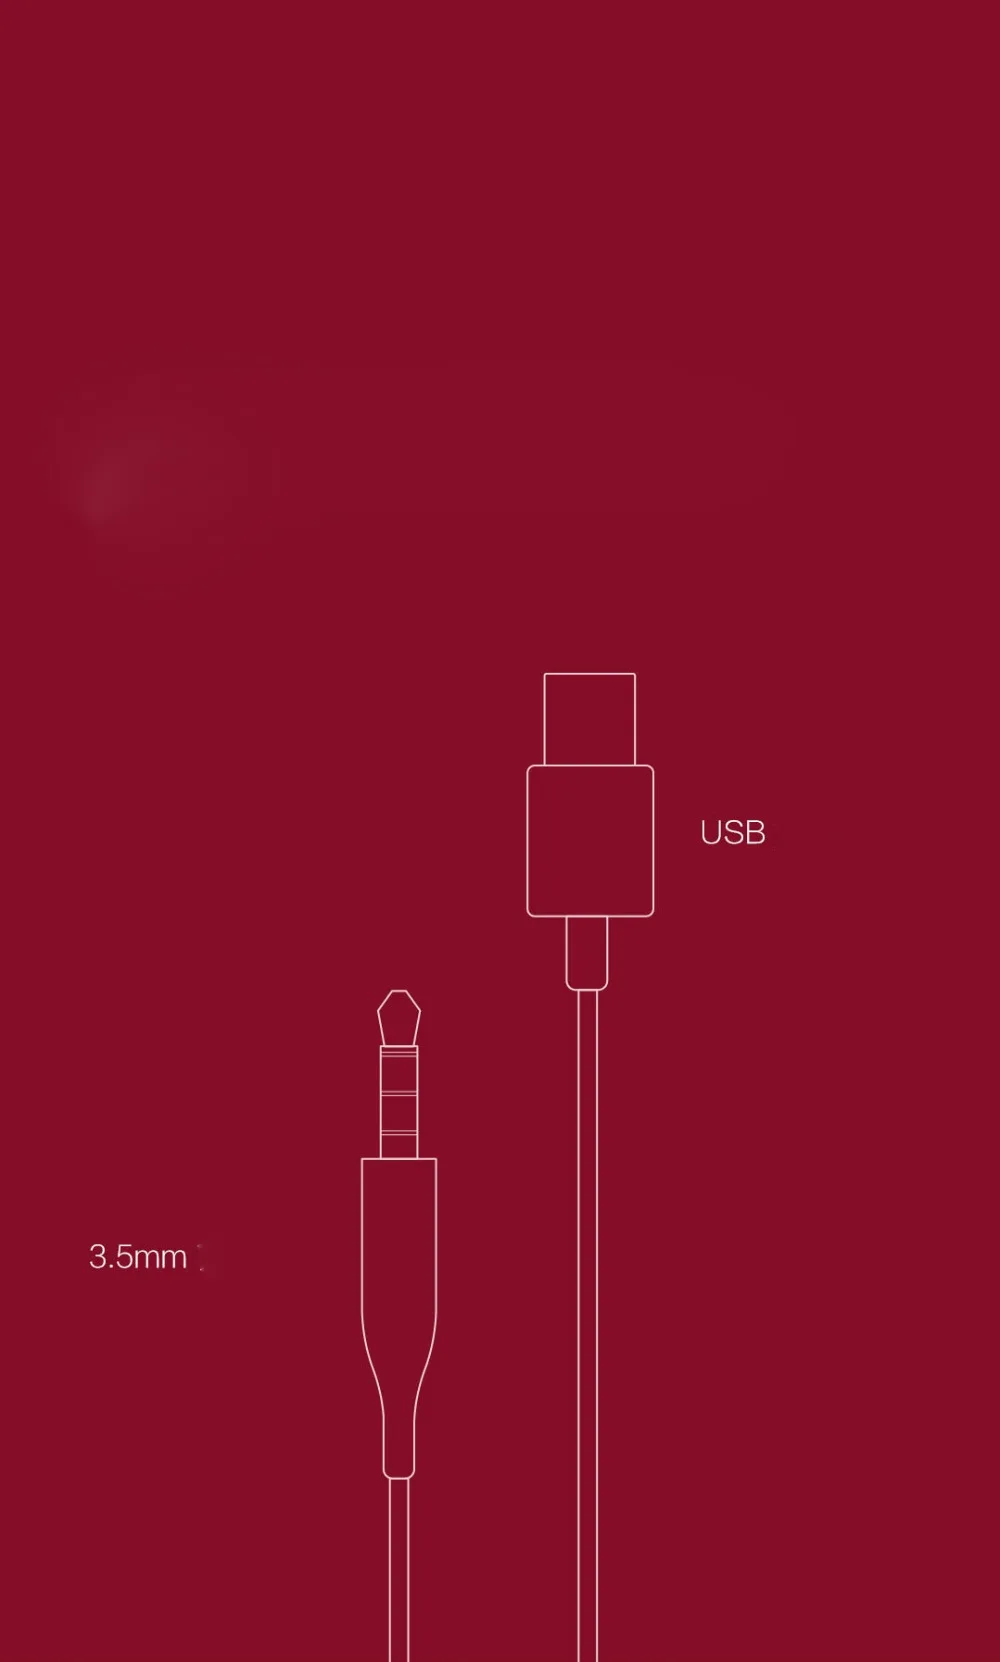 Xiaomi 7,1 Virtual Surround Sound Stereo 3,5 мм USB Игровые наушники с микрофоном светодиодный светильник 40 мм динамик ENC шумоподавление наушники